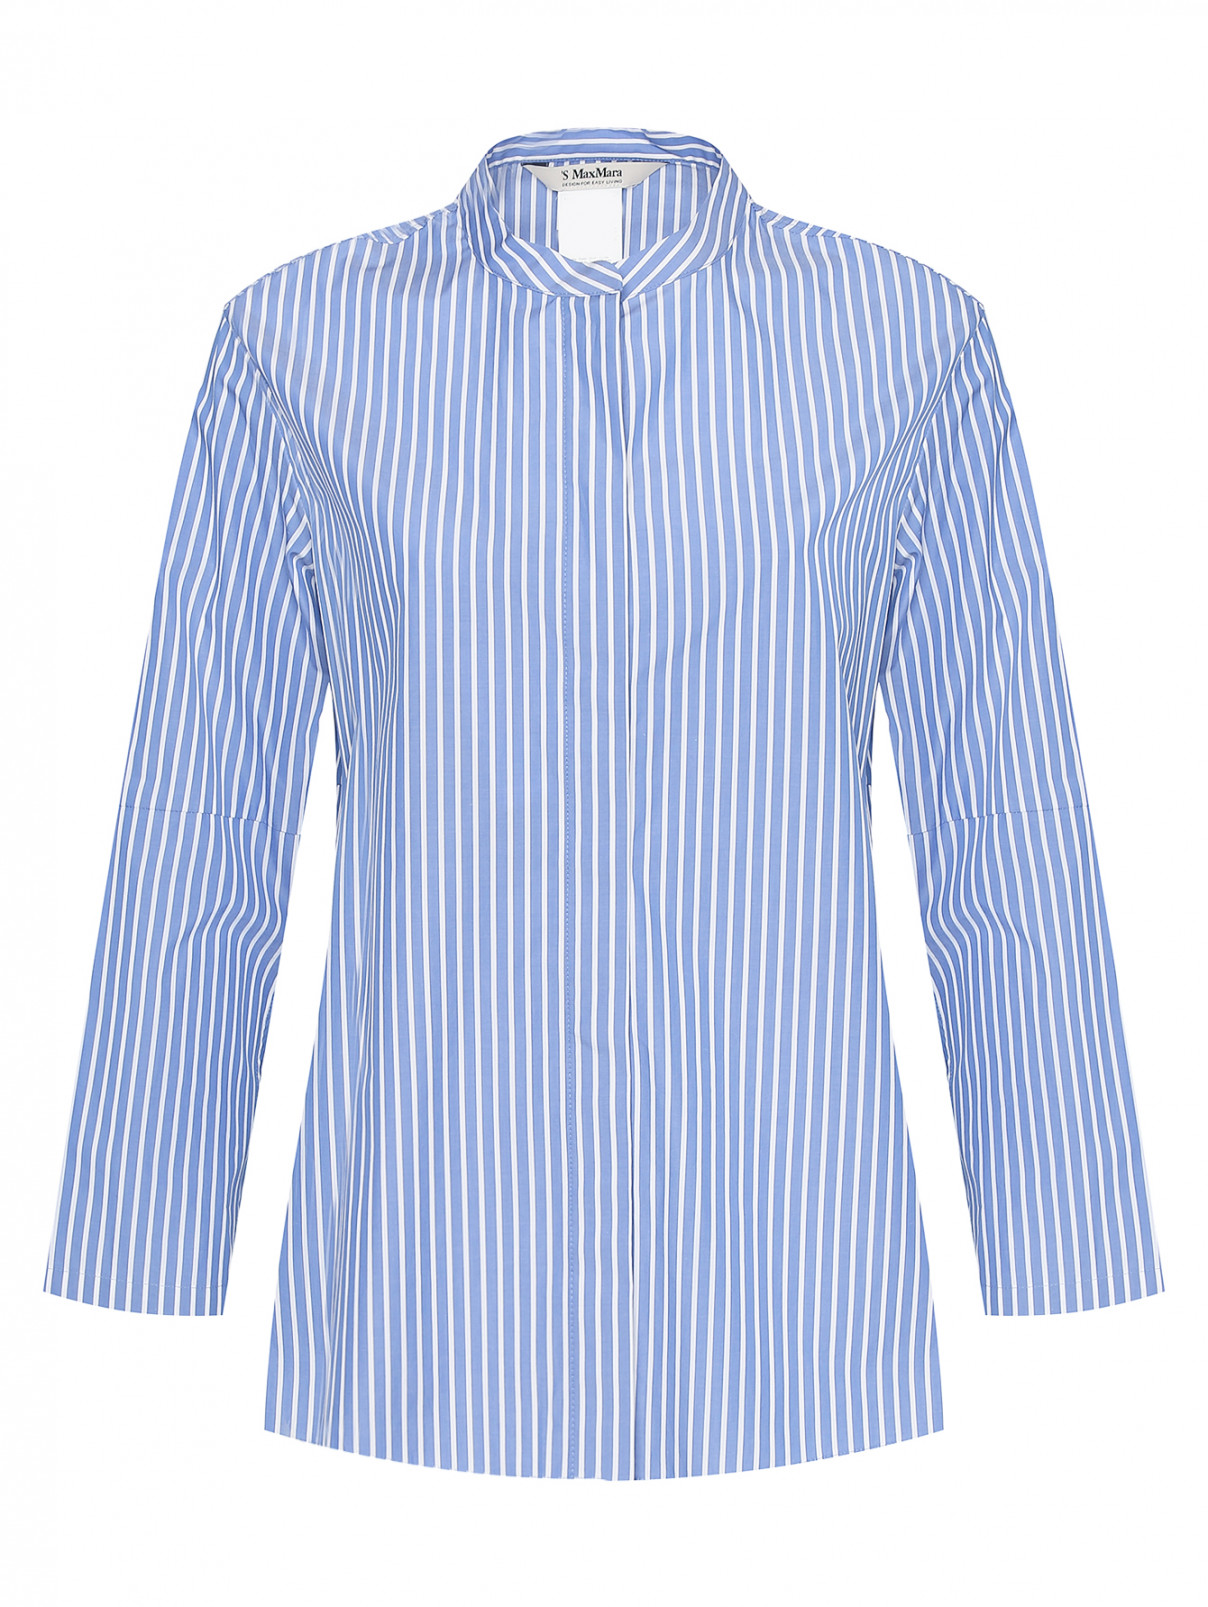 Блуза из хлопка в полоску Max Mara  –  Общий вид  – Цвет:  Синий